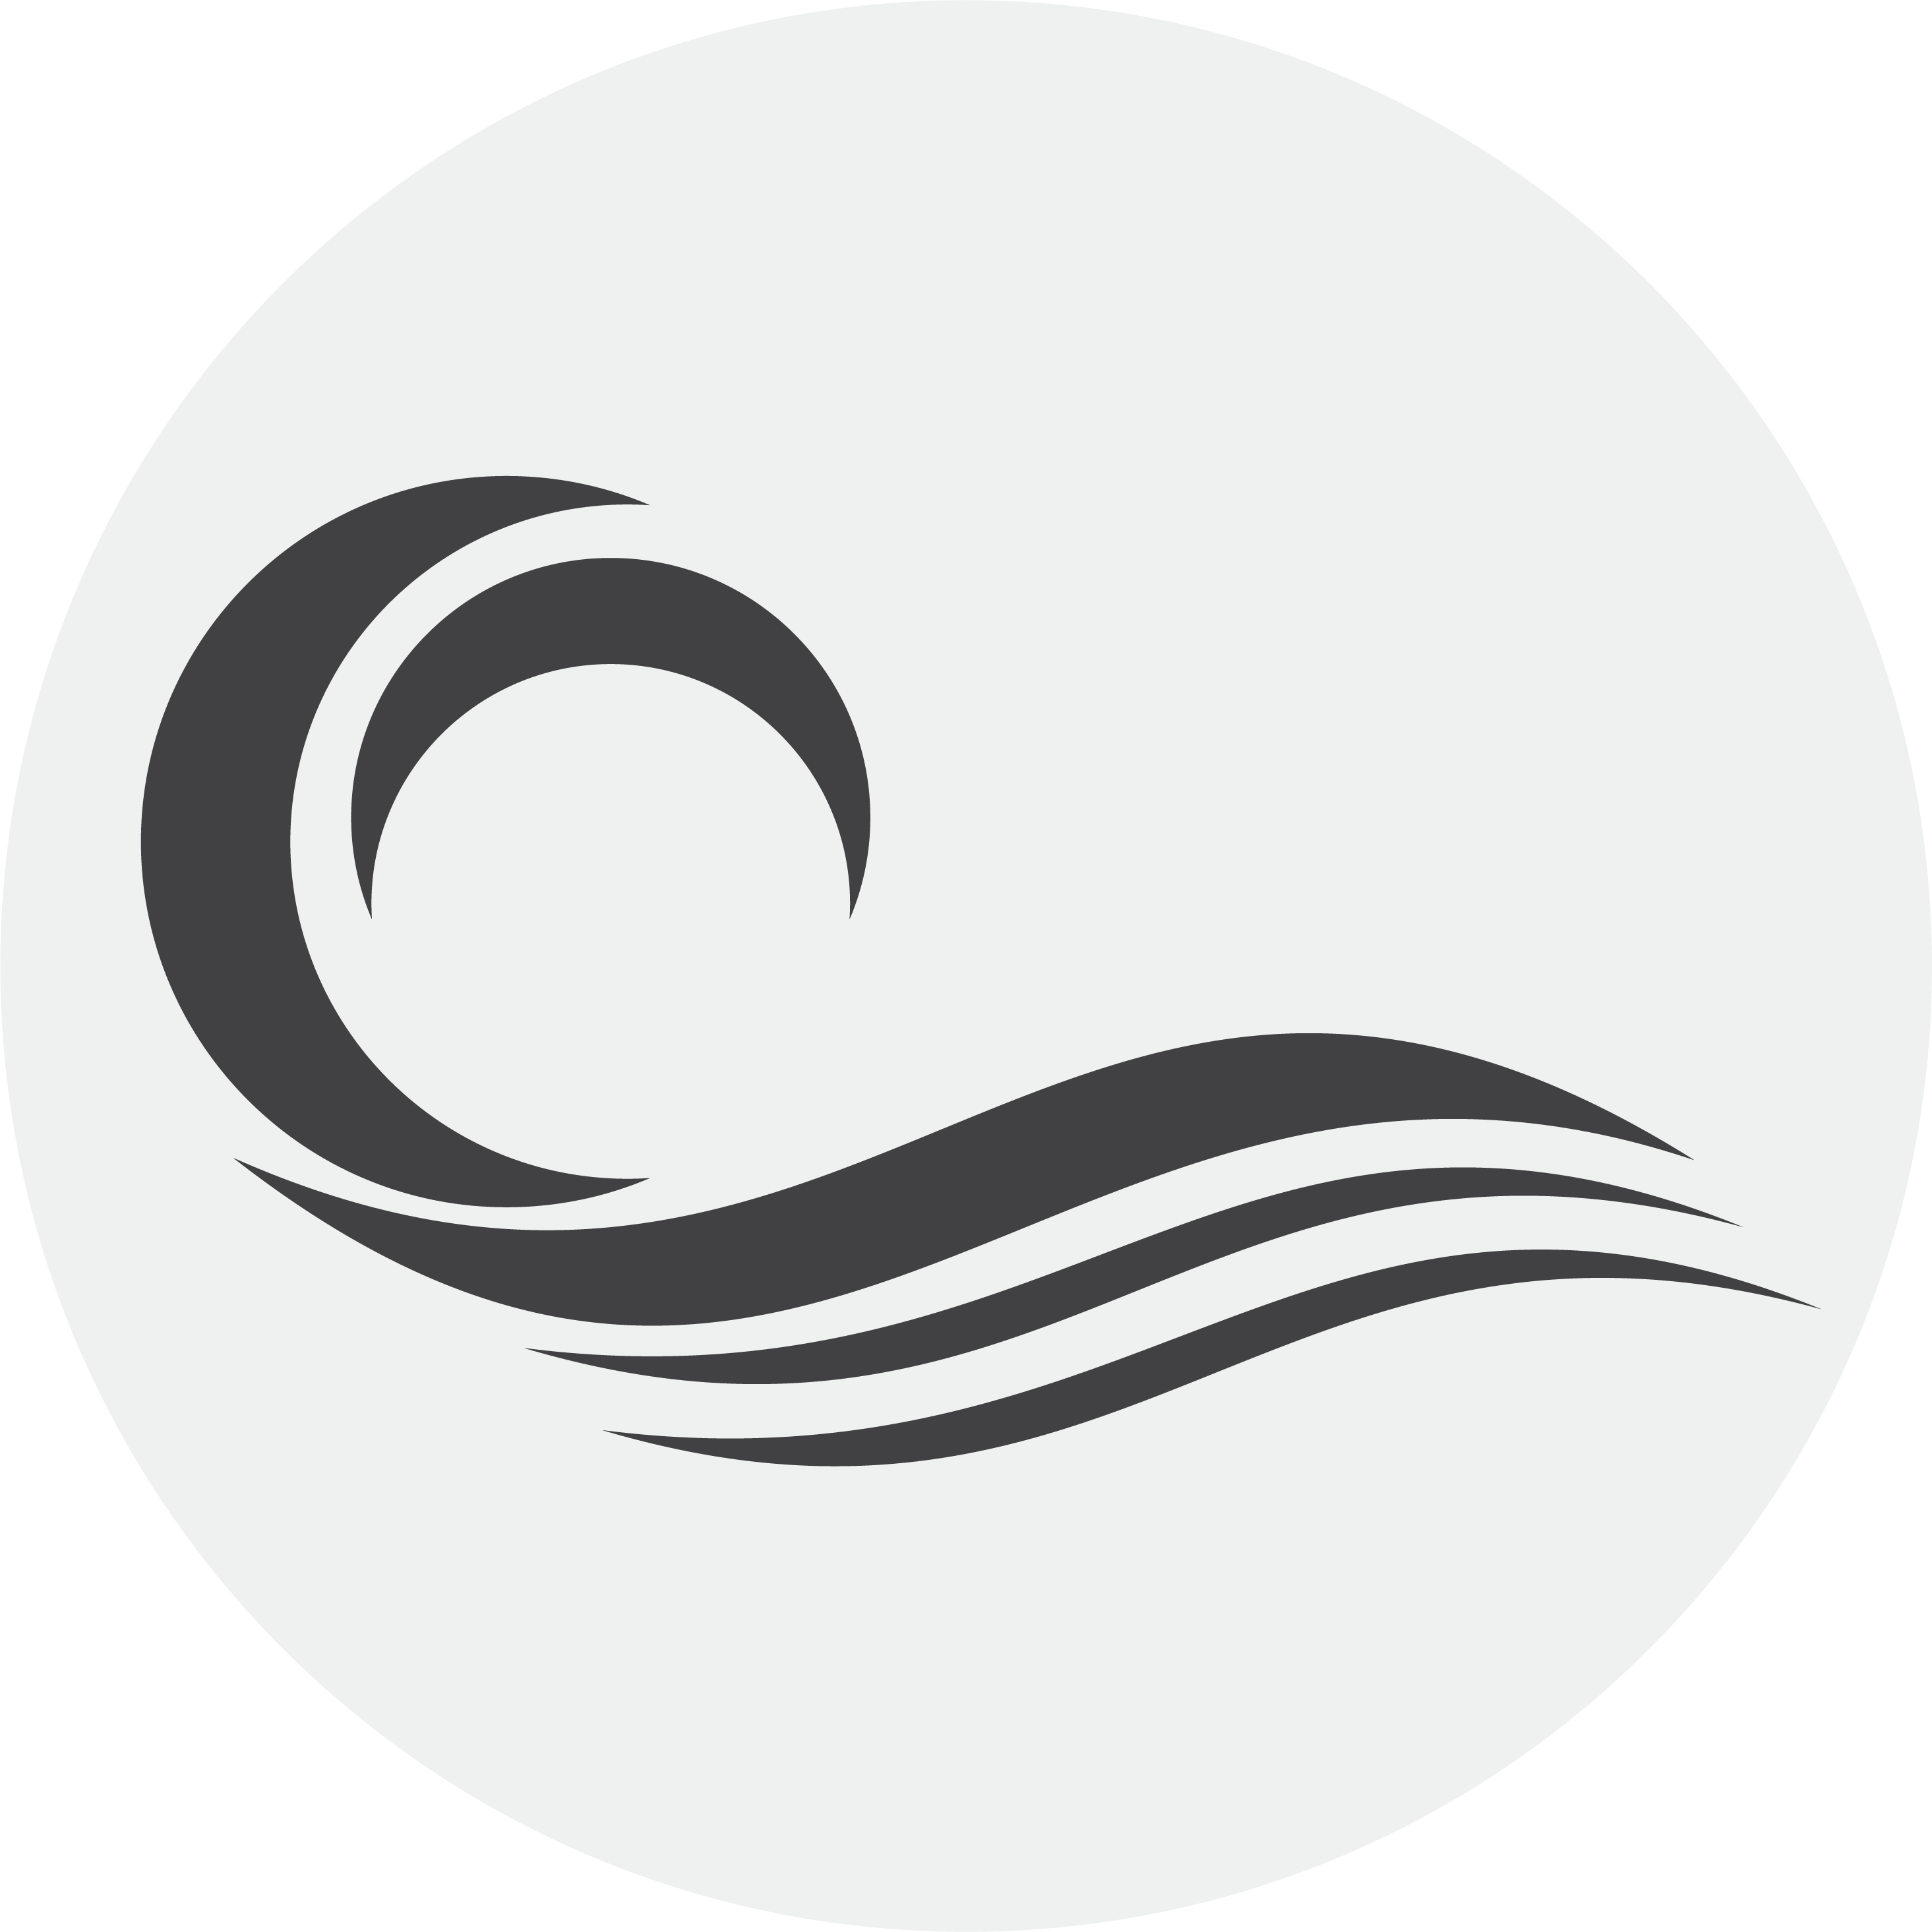 Elemental Flow Yoga School logo